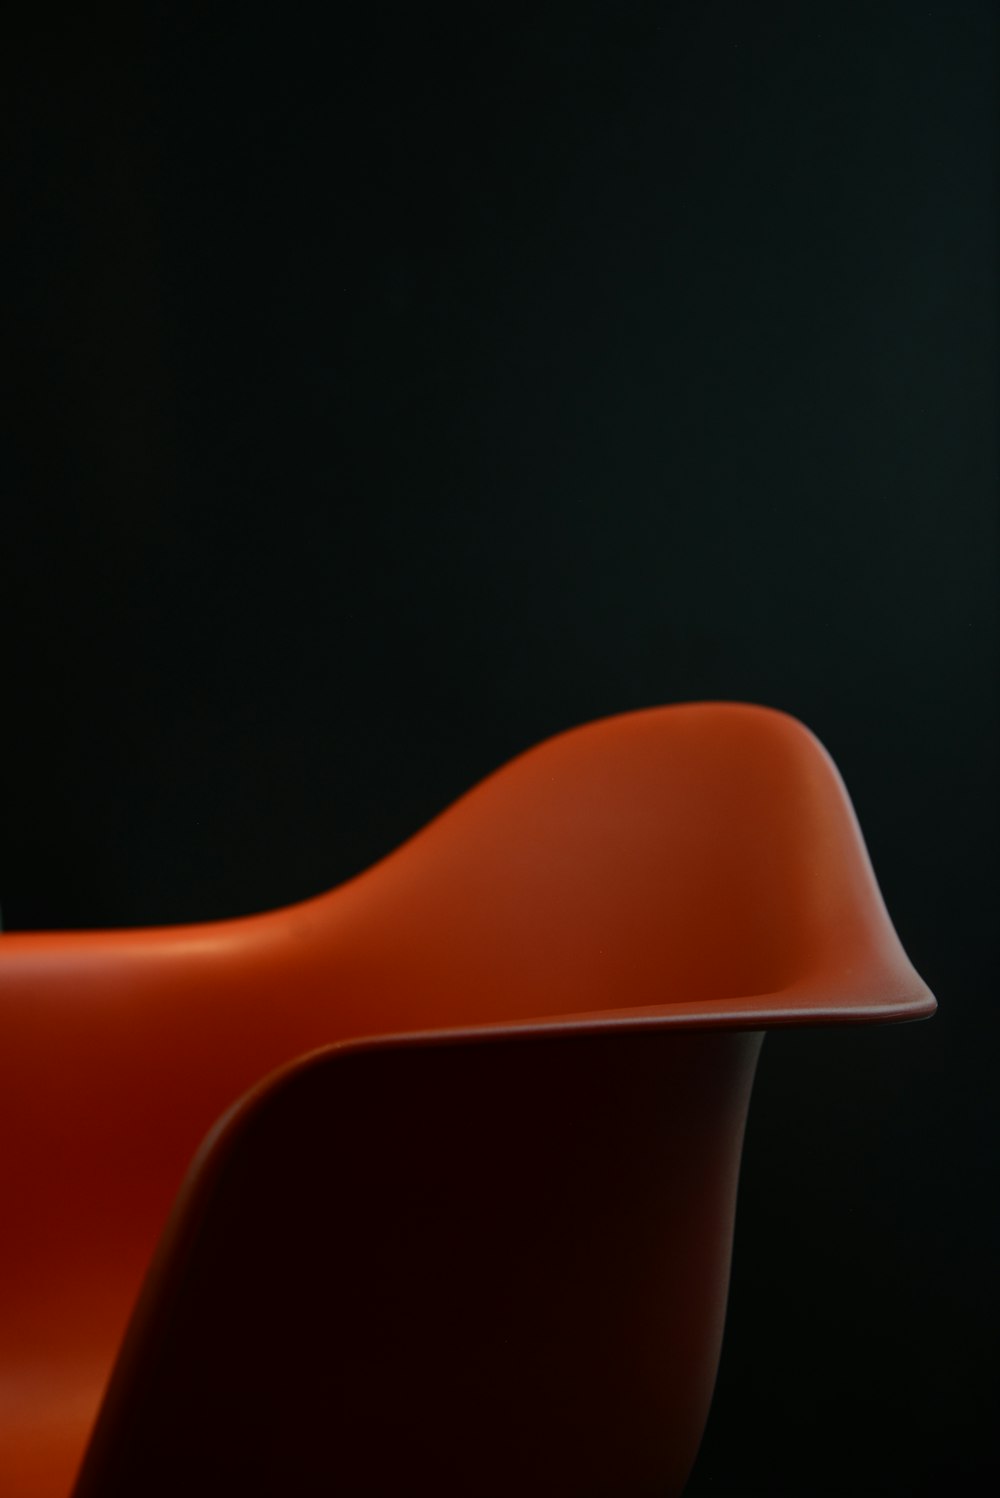 silla de plástico rojo sobre fondo negro